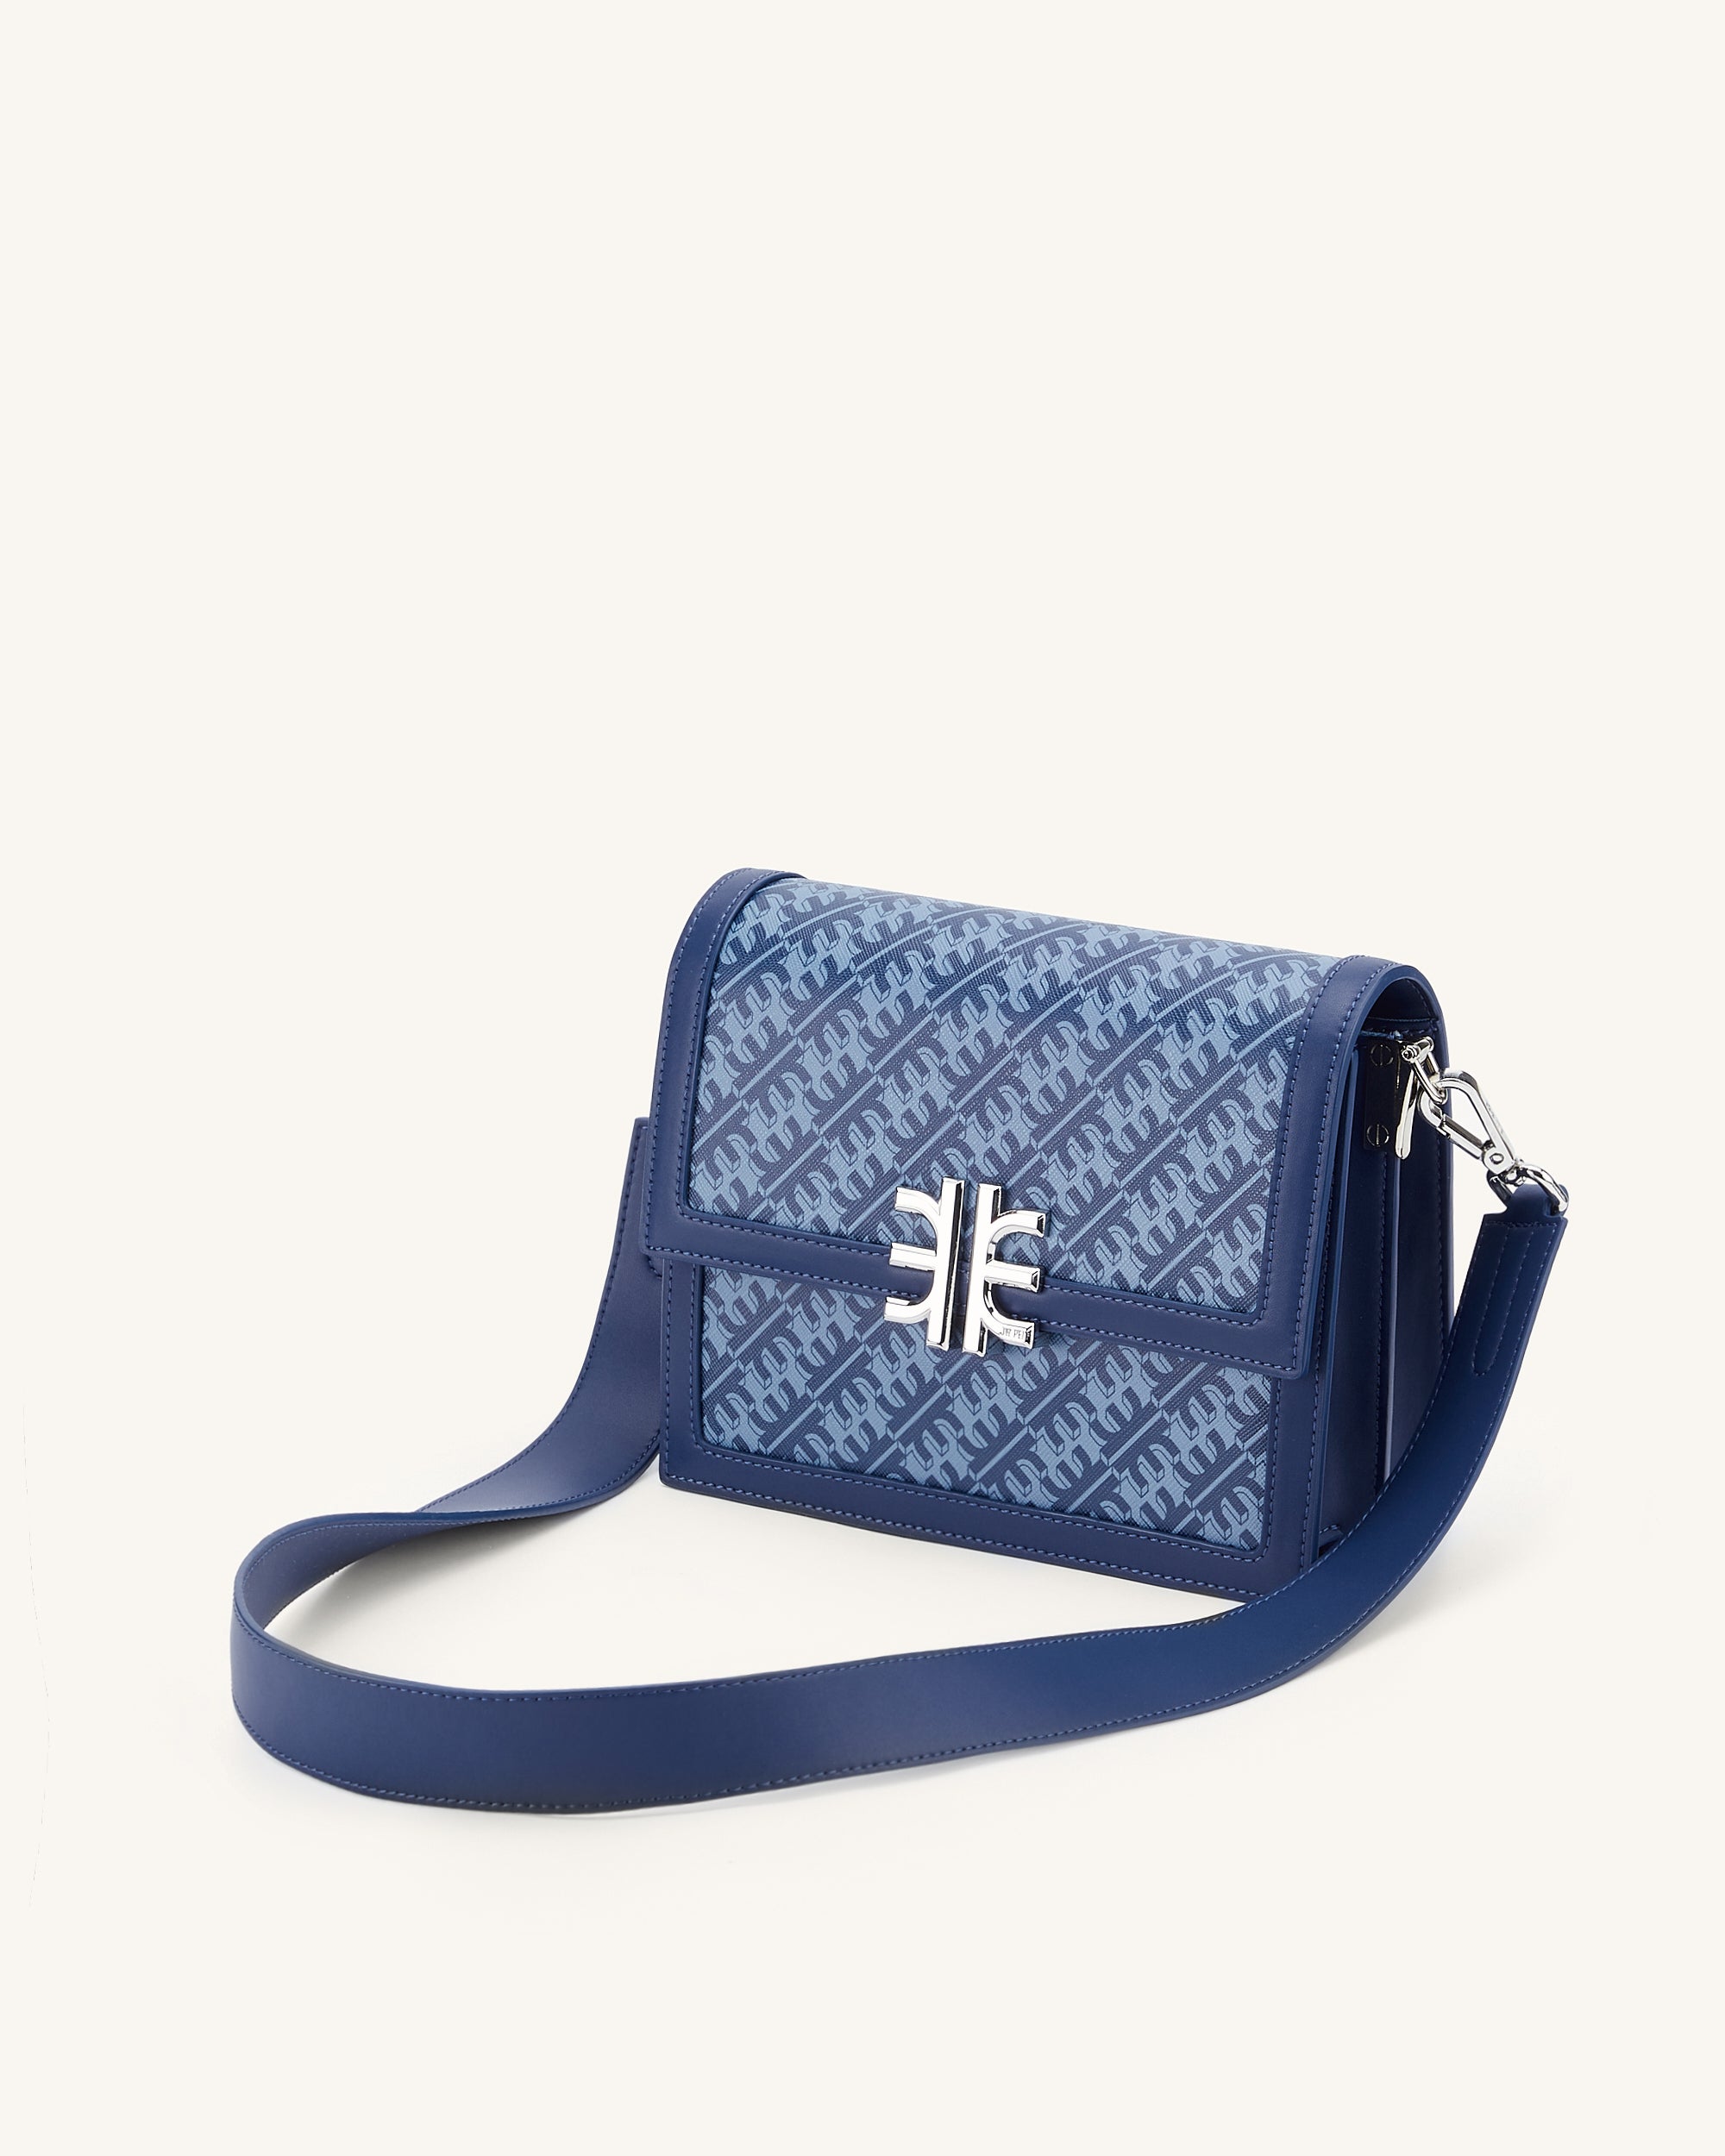 JW PEI Women's FEI Crossbody Phone Bag: Handbags